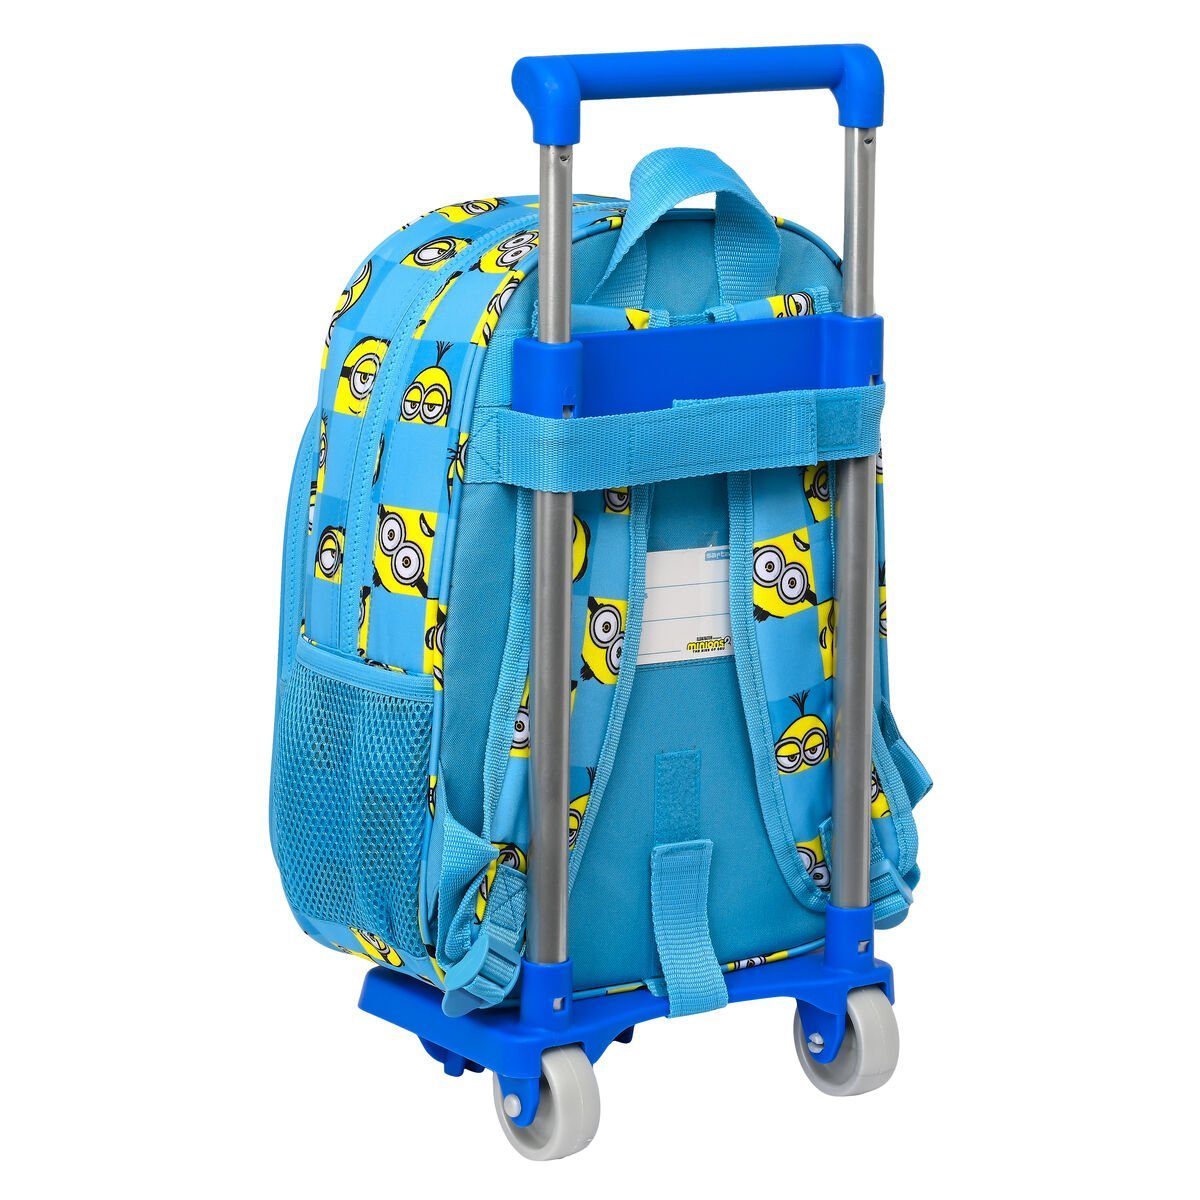 Minions Rucksack Kinder-Rucksack mit Rädern Minions cm x Minionstatic Blau 34 x 26 11